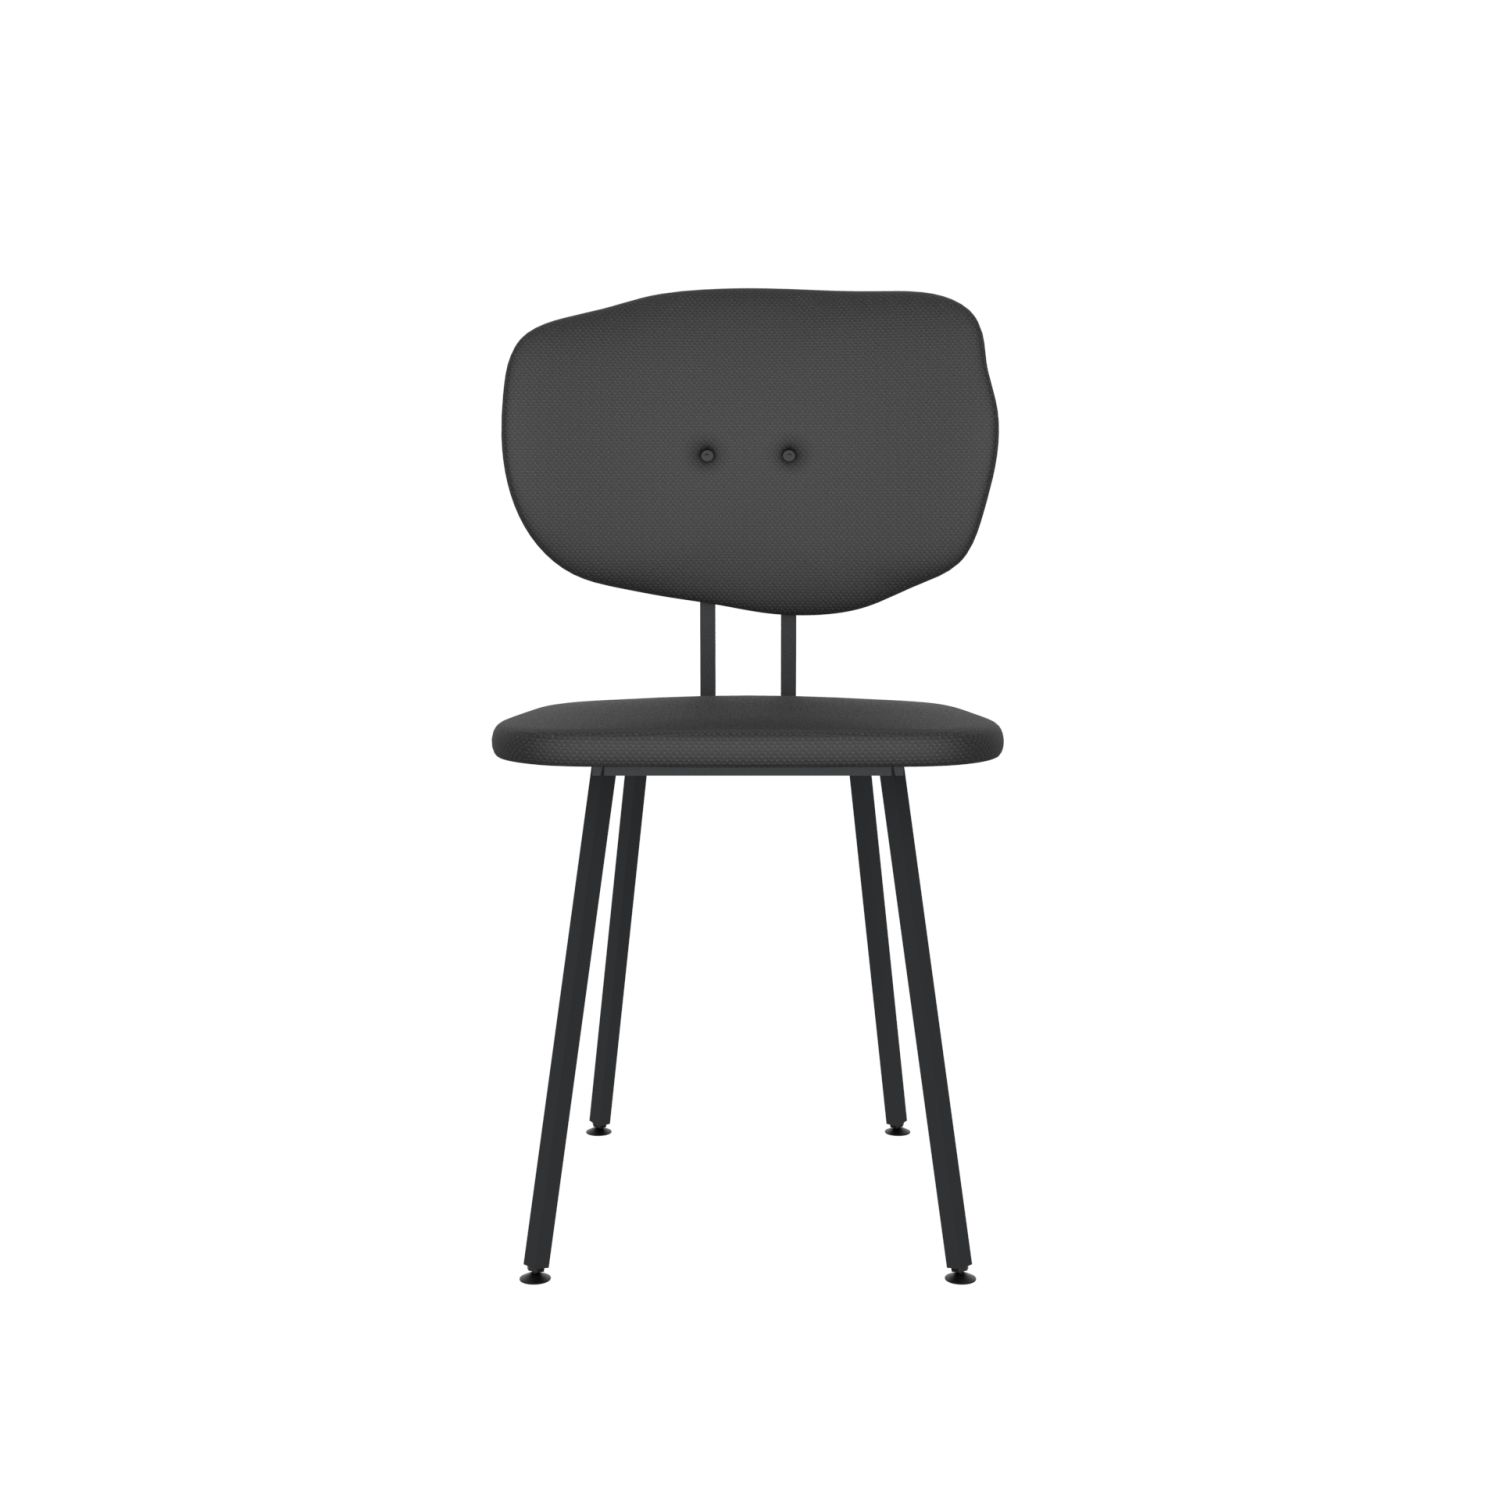 lensvelt maarten baas chair 101 not stackable without armrests backrest f havana black 090 black ral9005 hard leg ends